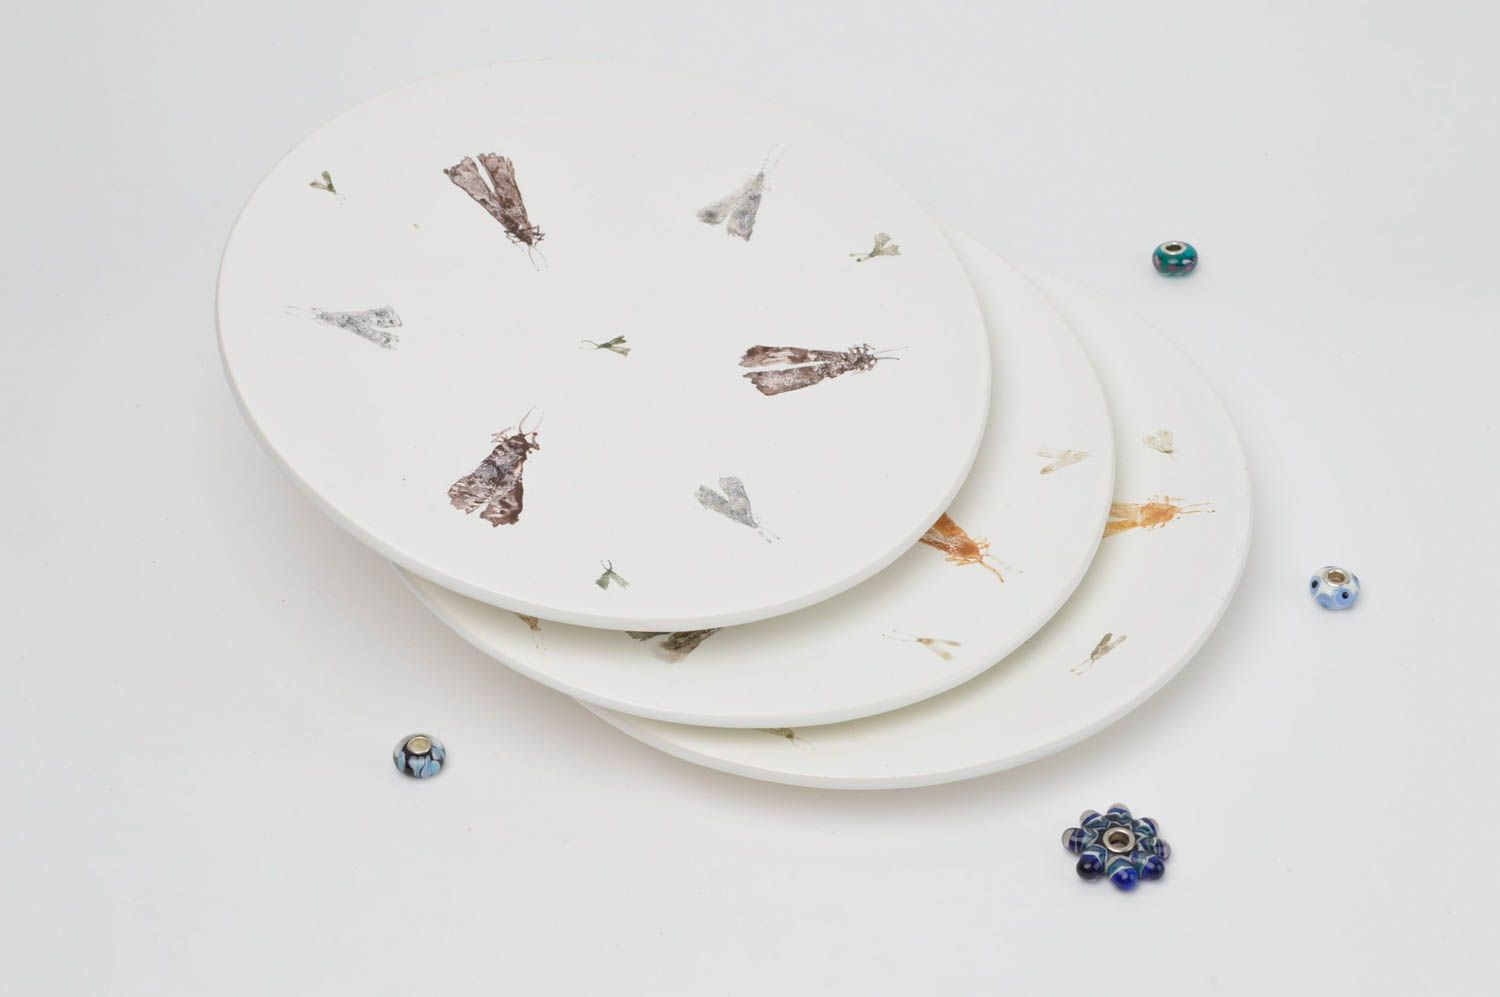 Platos de cerámica hechos a mano vajillas modernas utensilios de cocina foto 1